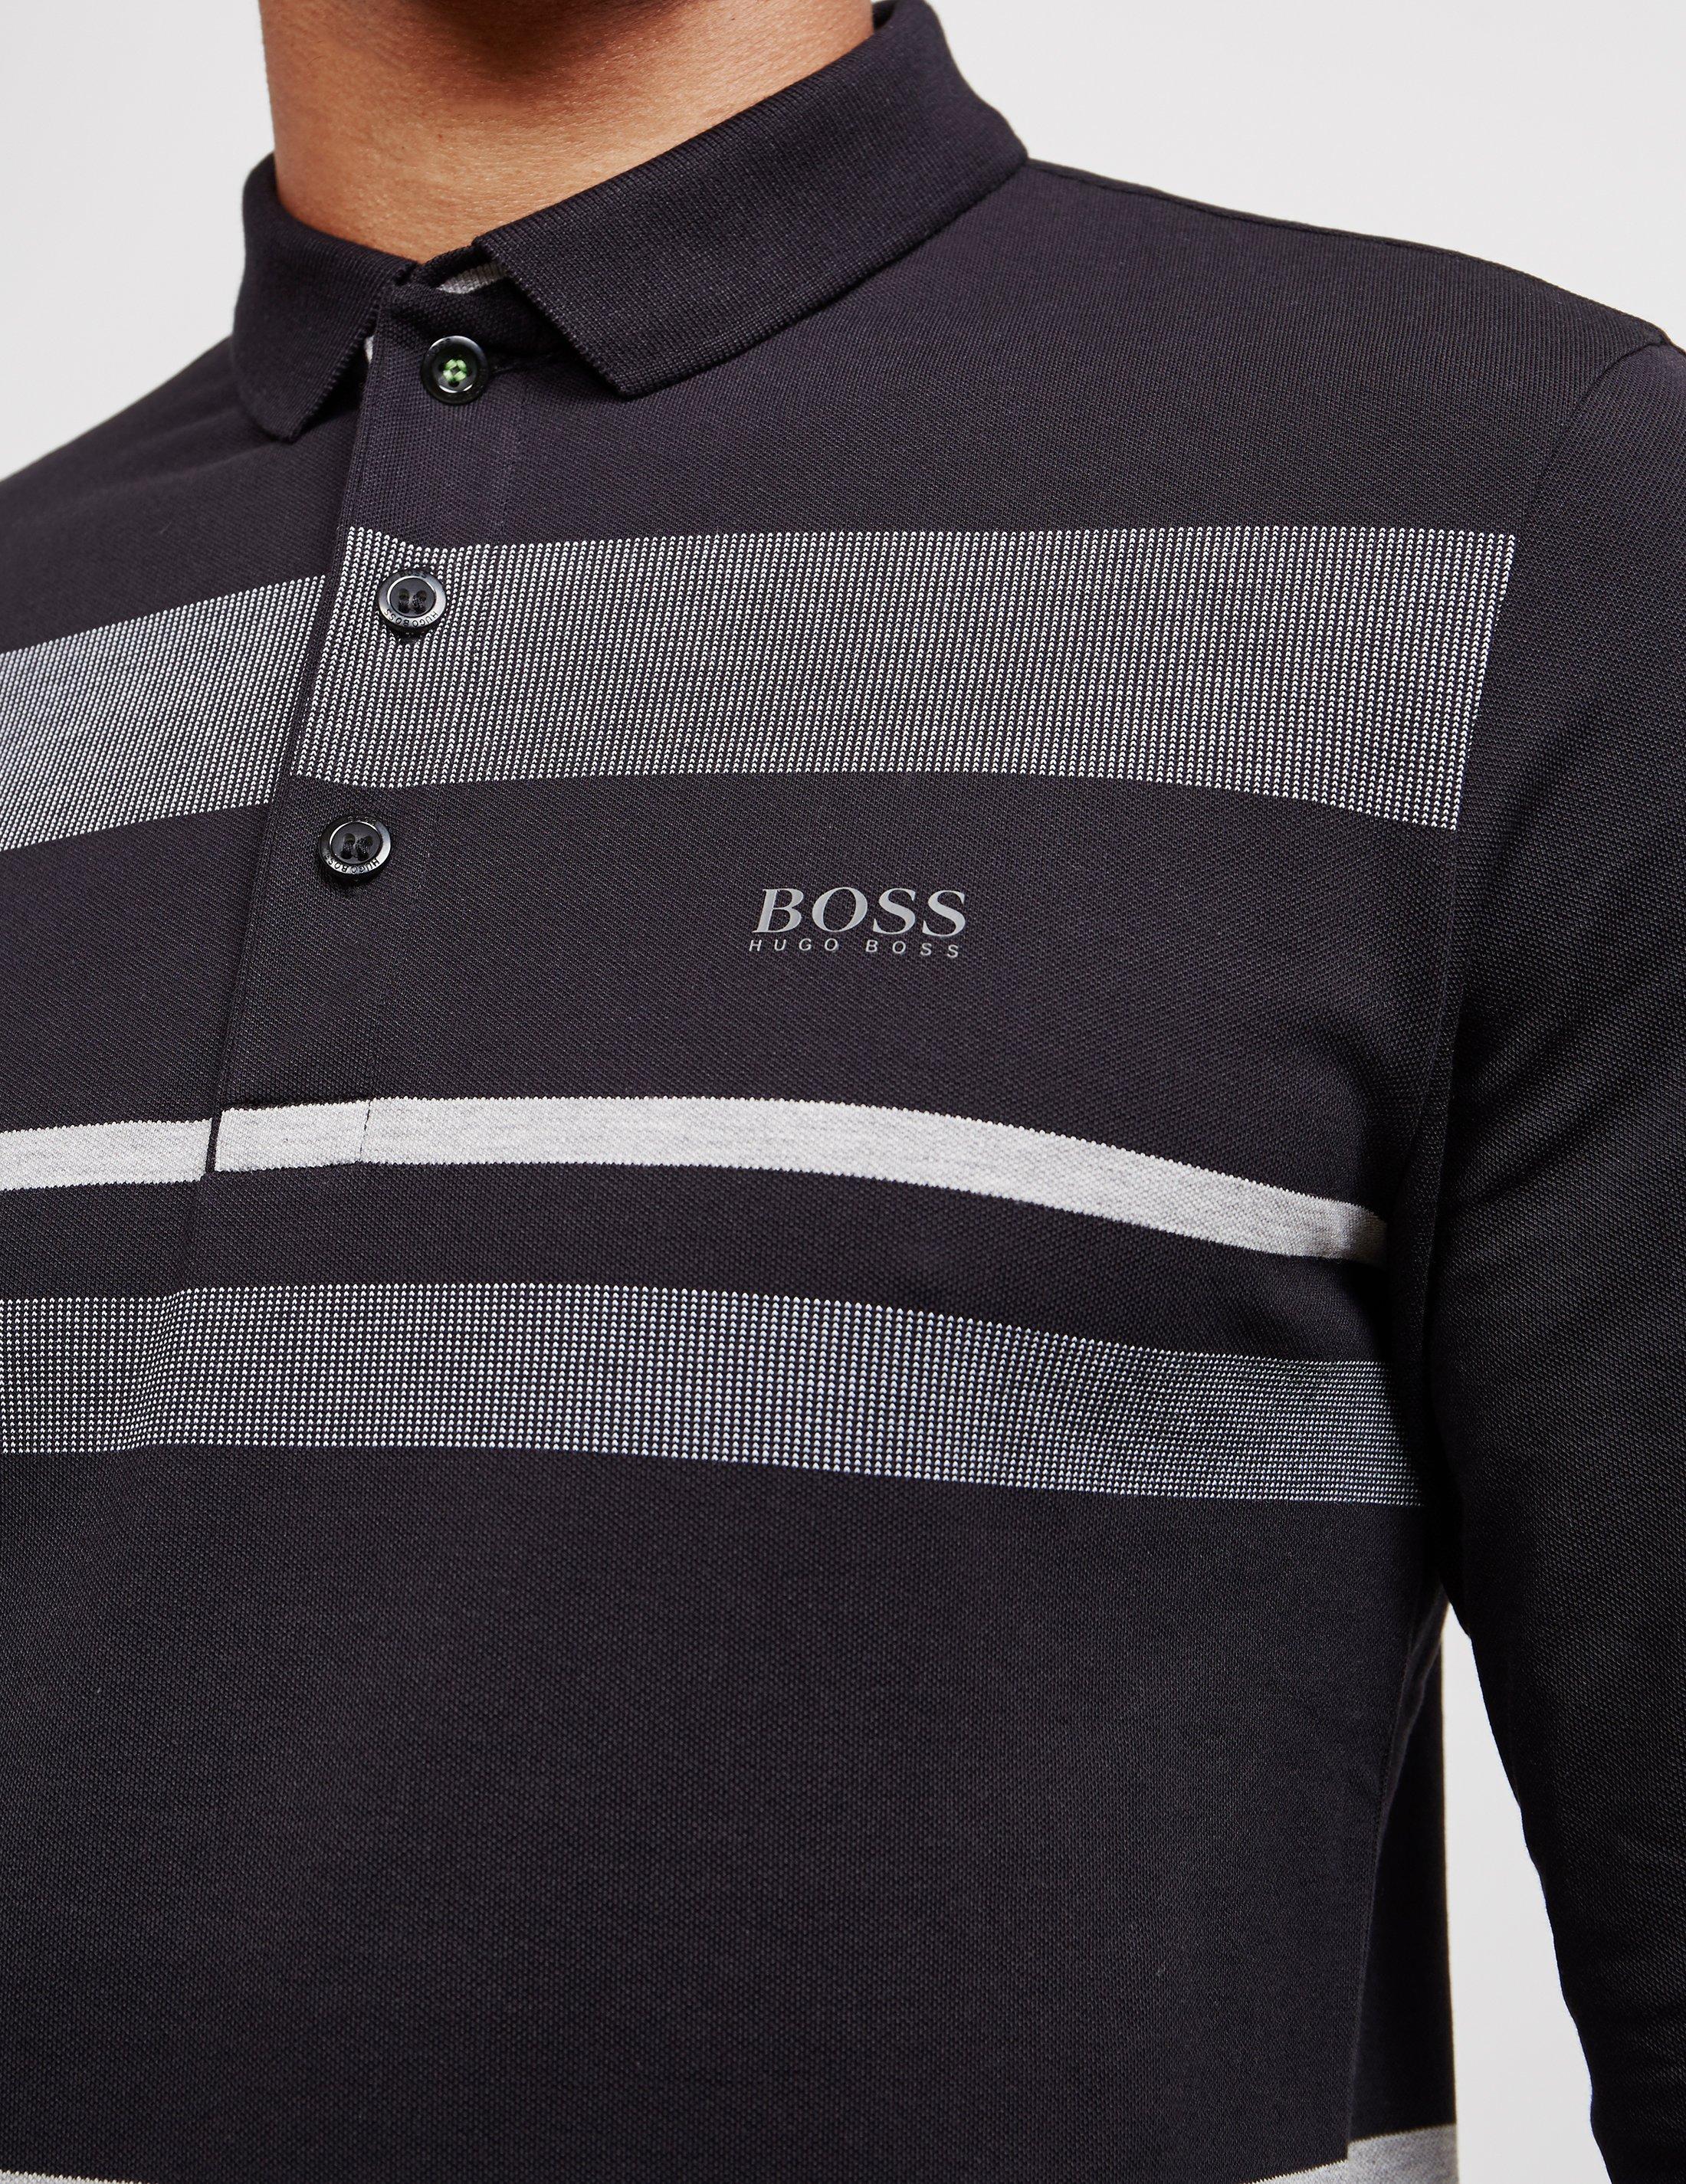 BOSS Pleesy Long Sleeve Polo Shirt Black in Black for Men - Lyst